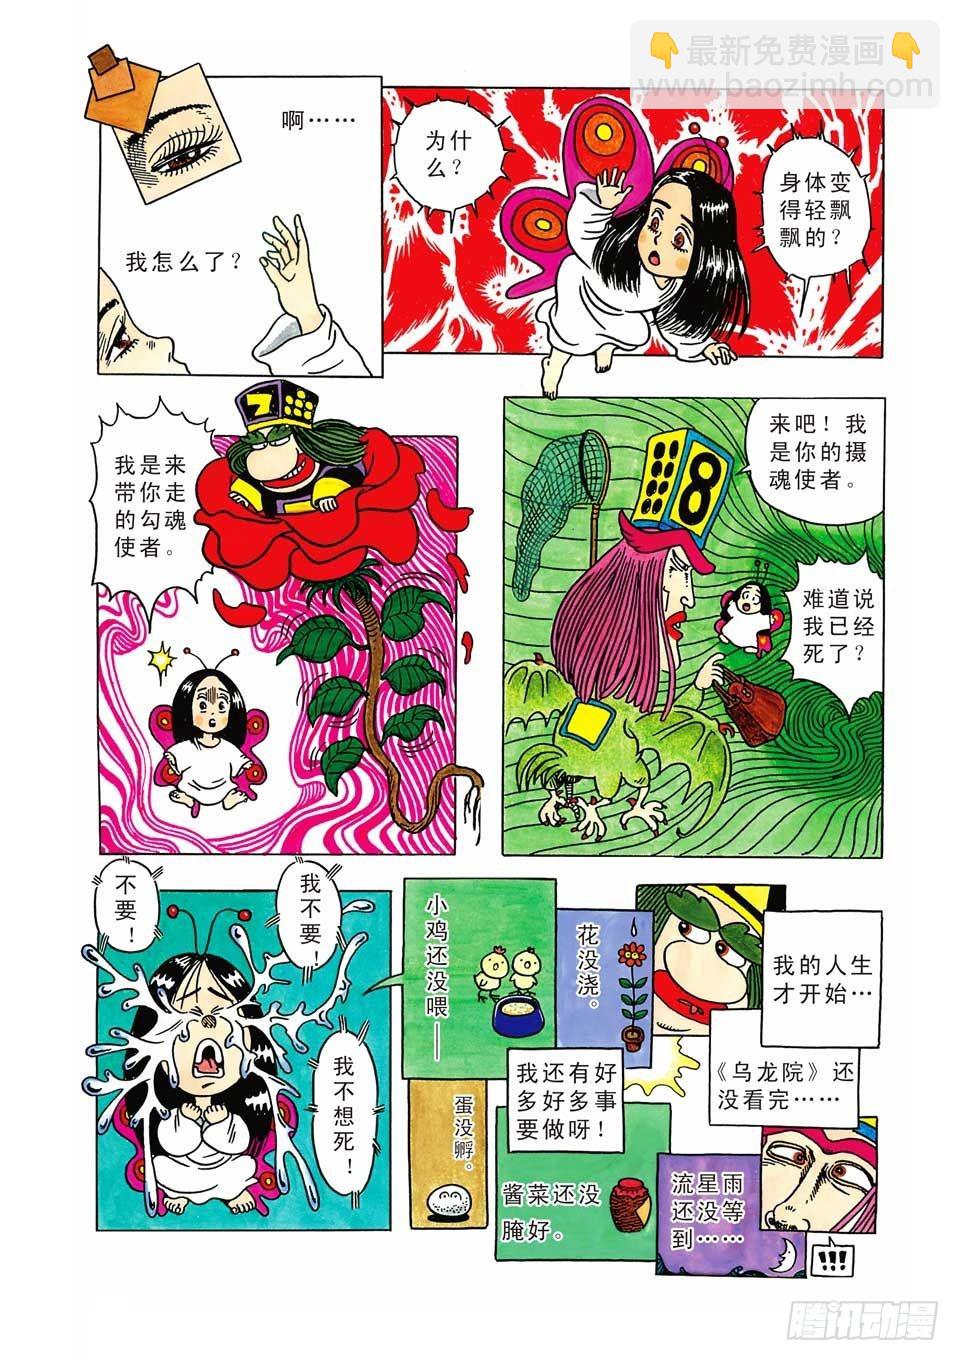 乌龙院爆笑漫画系列七鲜鱼丸 - 第2集 - 6